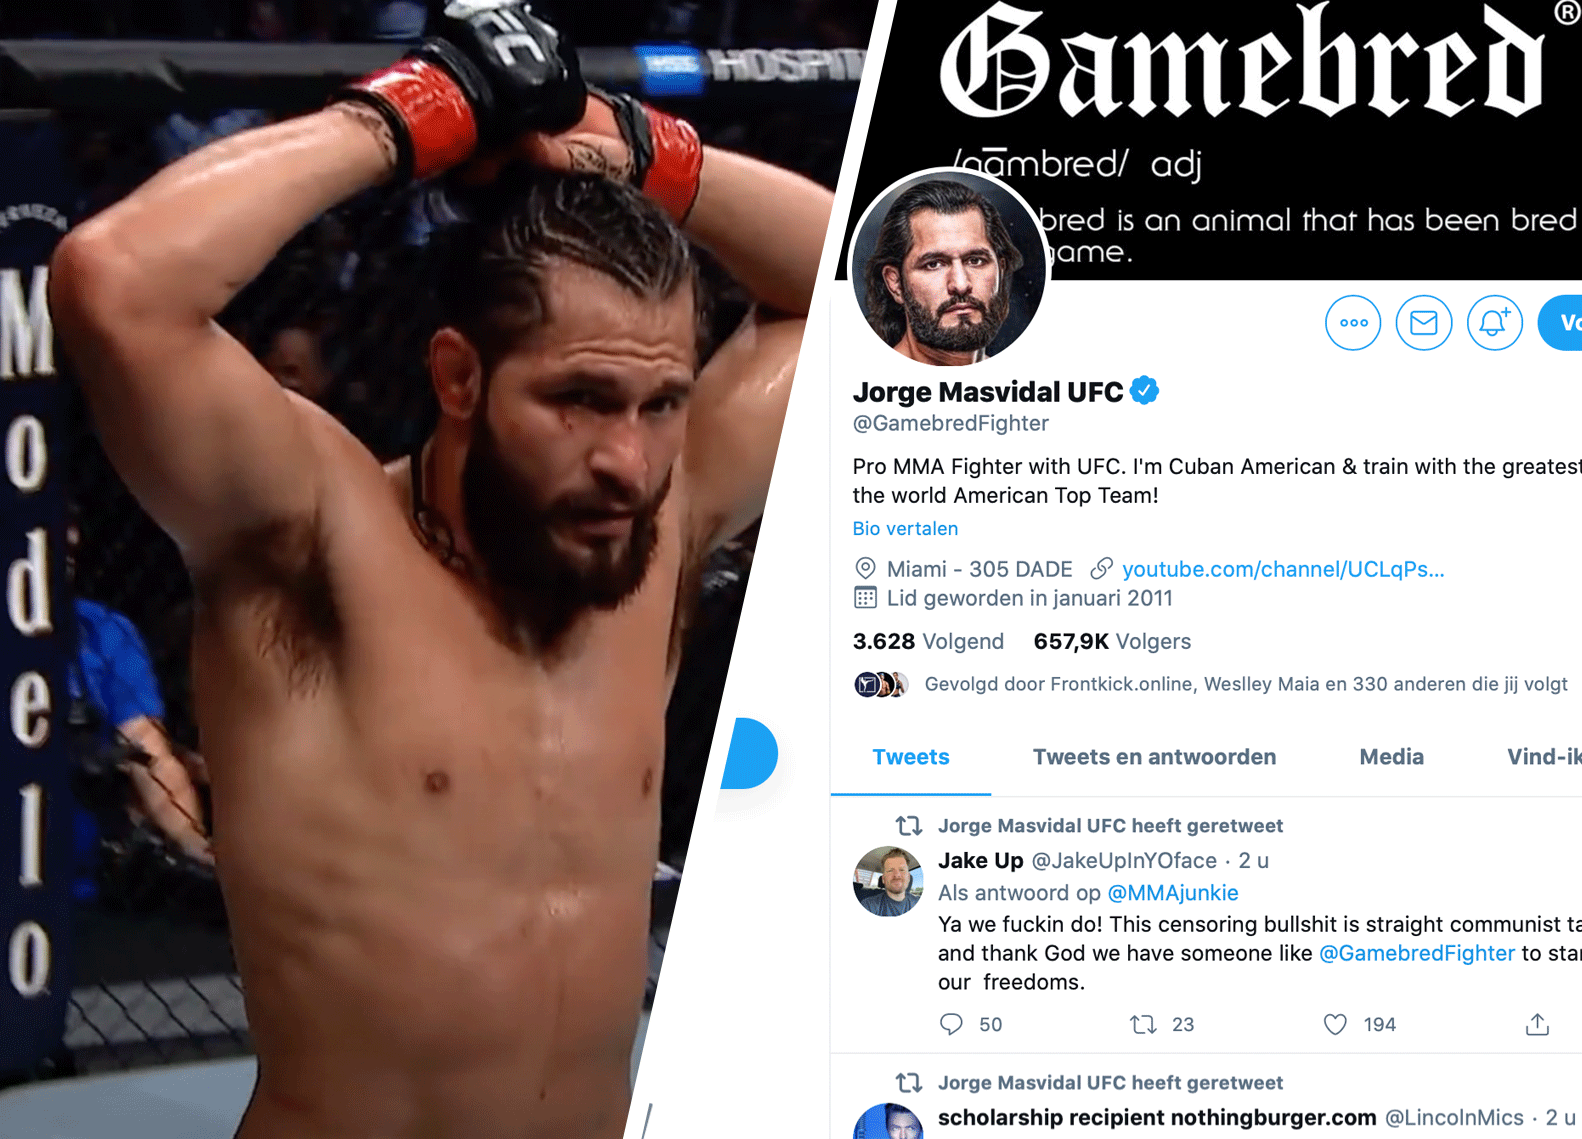 BREAKING: Top vechter Masvidal vraagt UFC om zijn ontslag